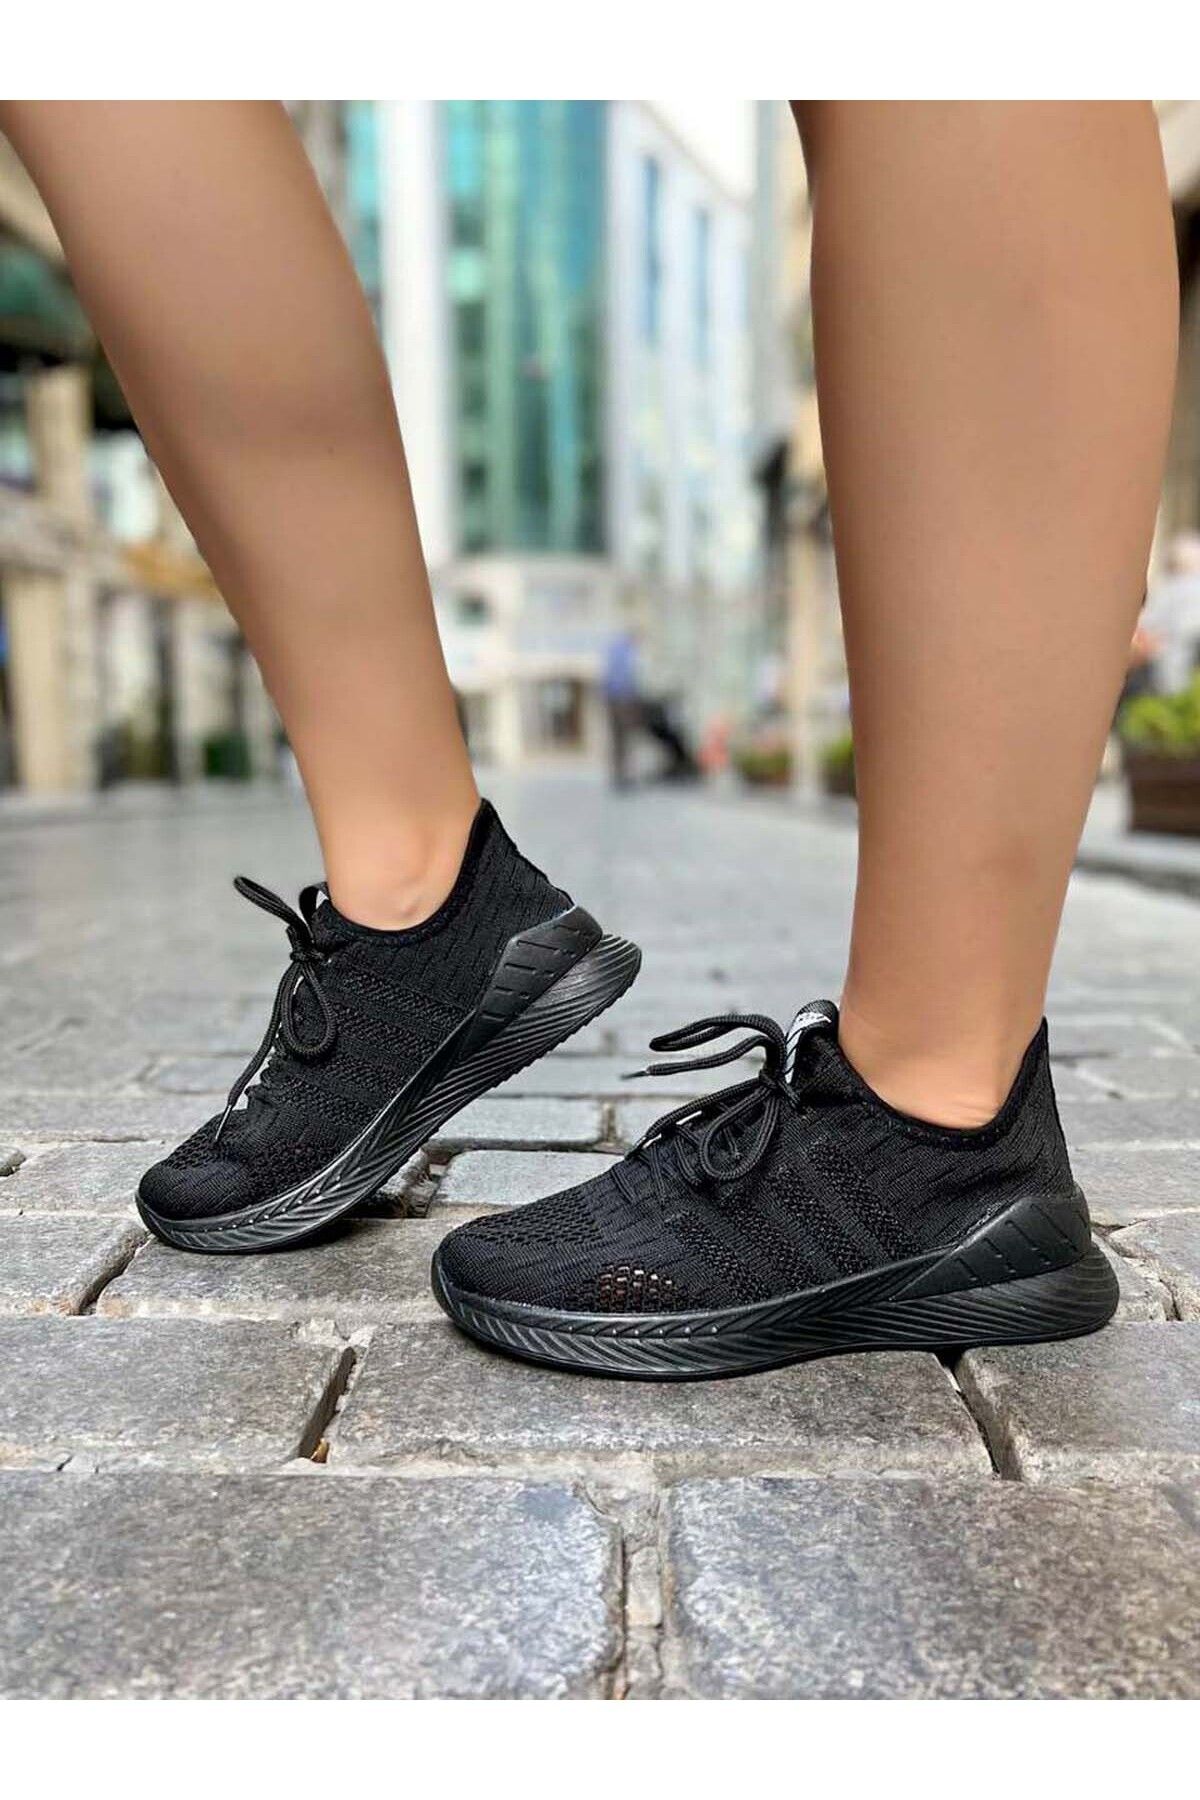 Fast Step Unisex Anatomik Taban Günlük Garantili Yürüyüş Koşu Sneaker Spor Ayakkabı Siyah 925za038